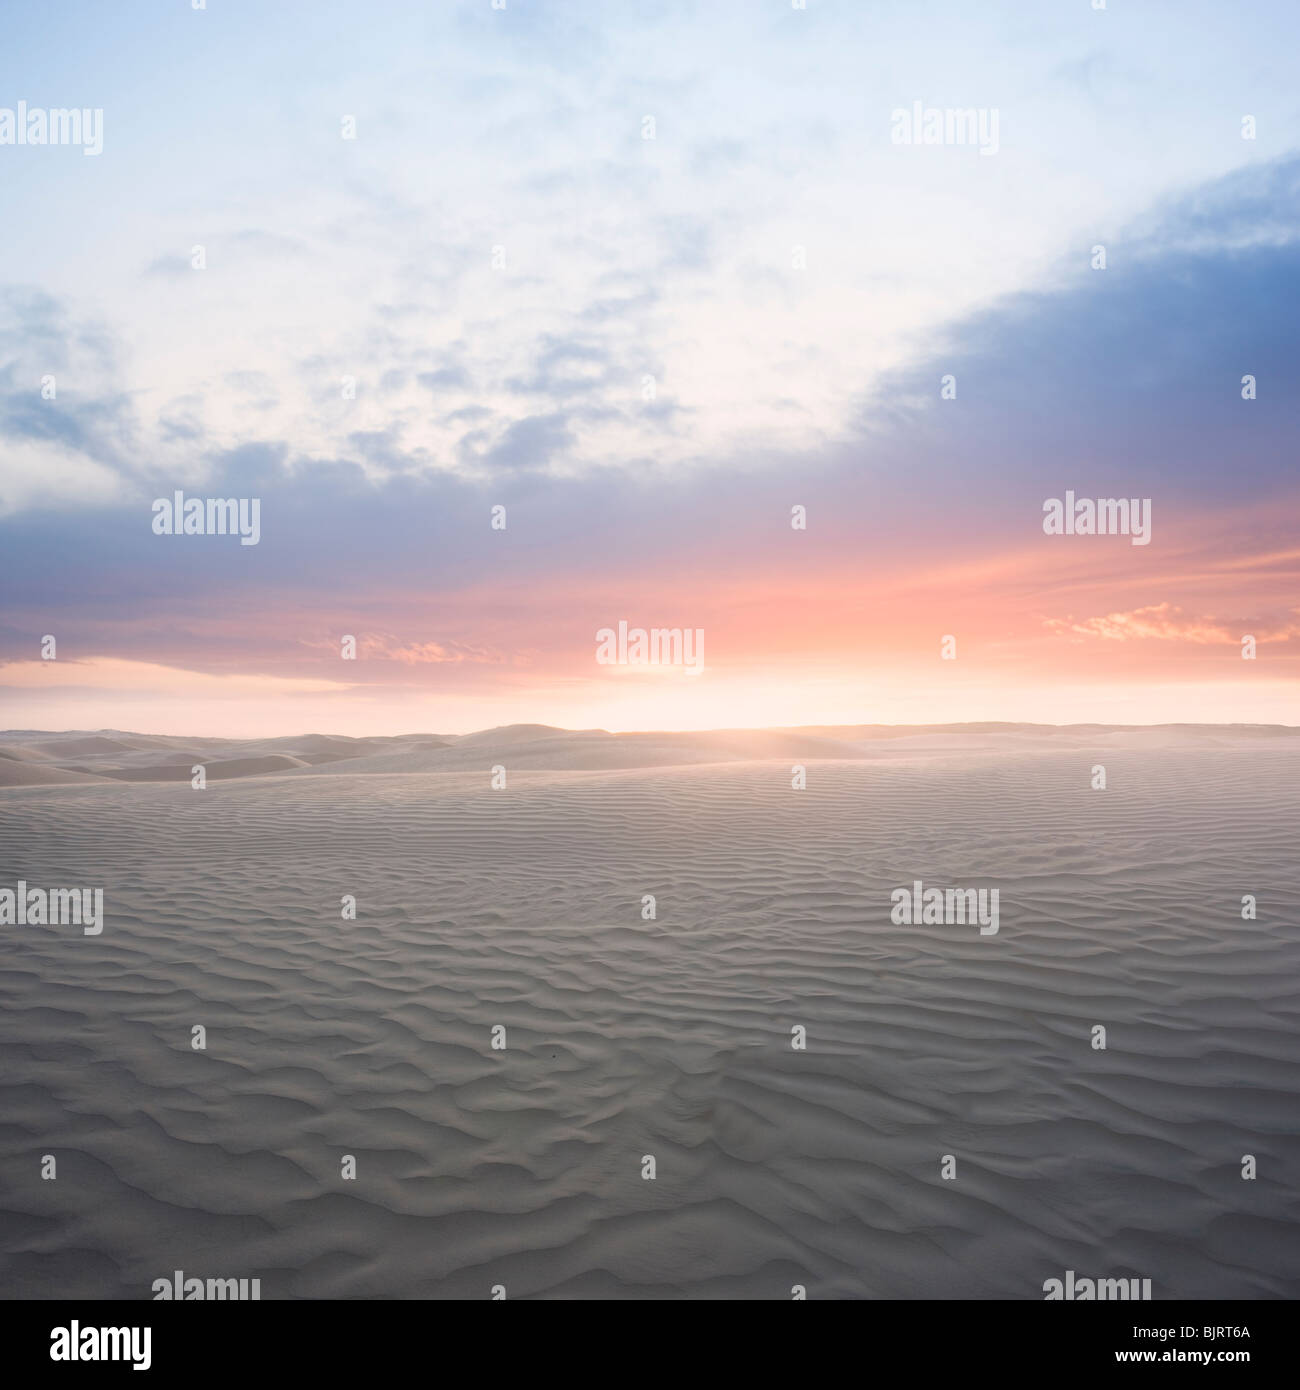 USA, Utah, Little Sahara, sunrise on desert Stock Photo